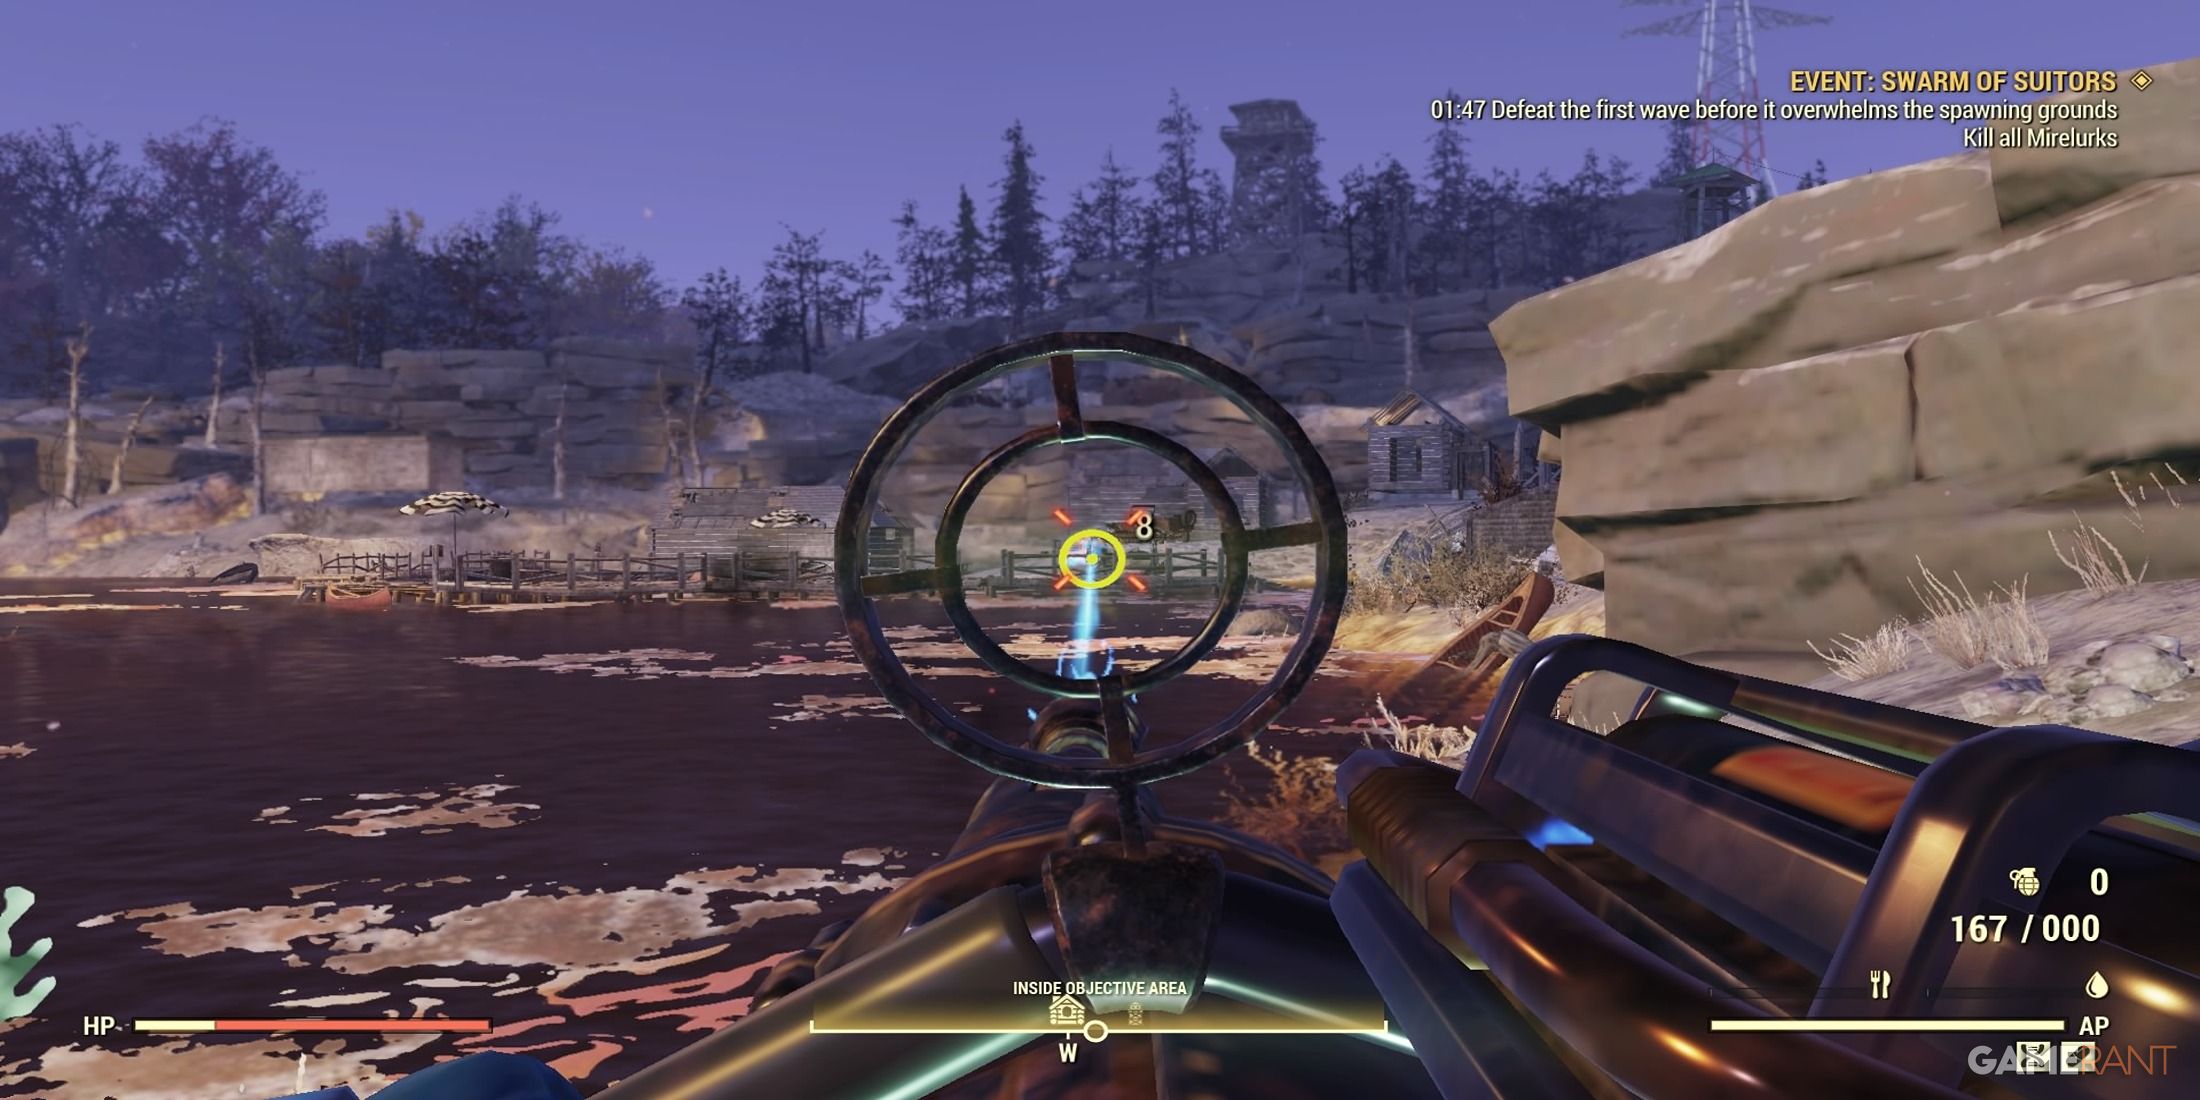 Firing A Gauss Minigun At Mirelurks in Fallout 76